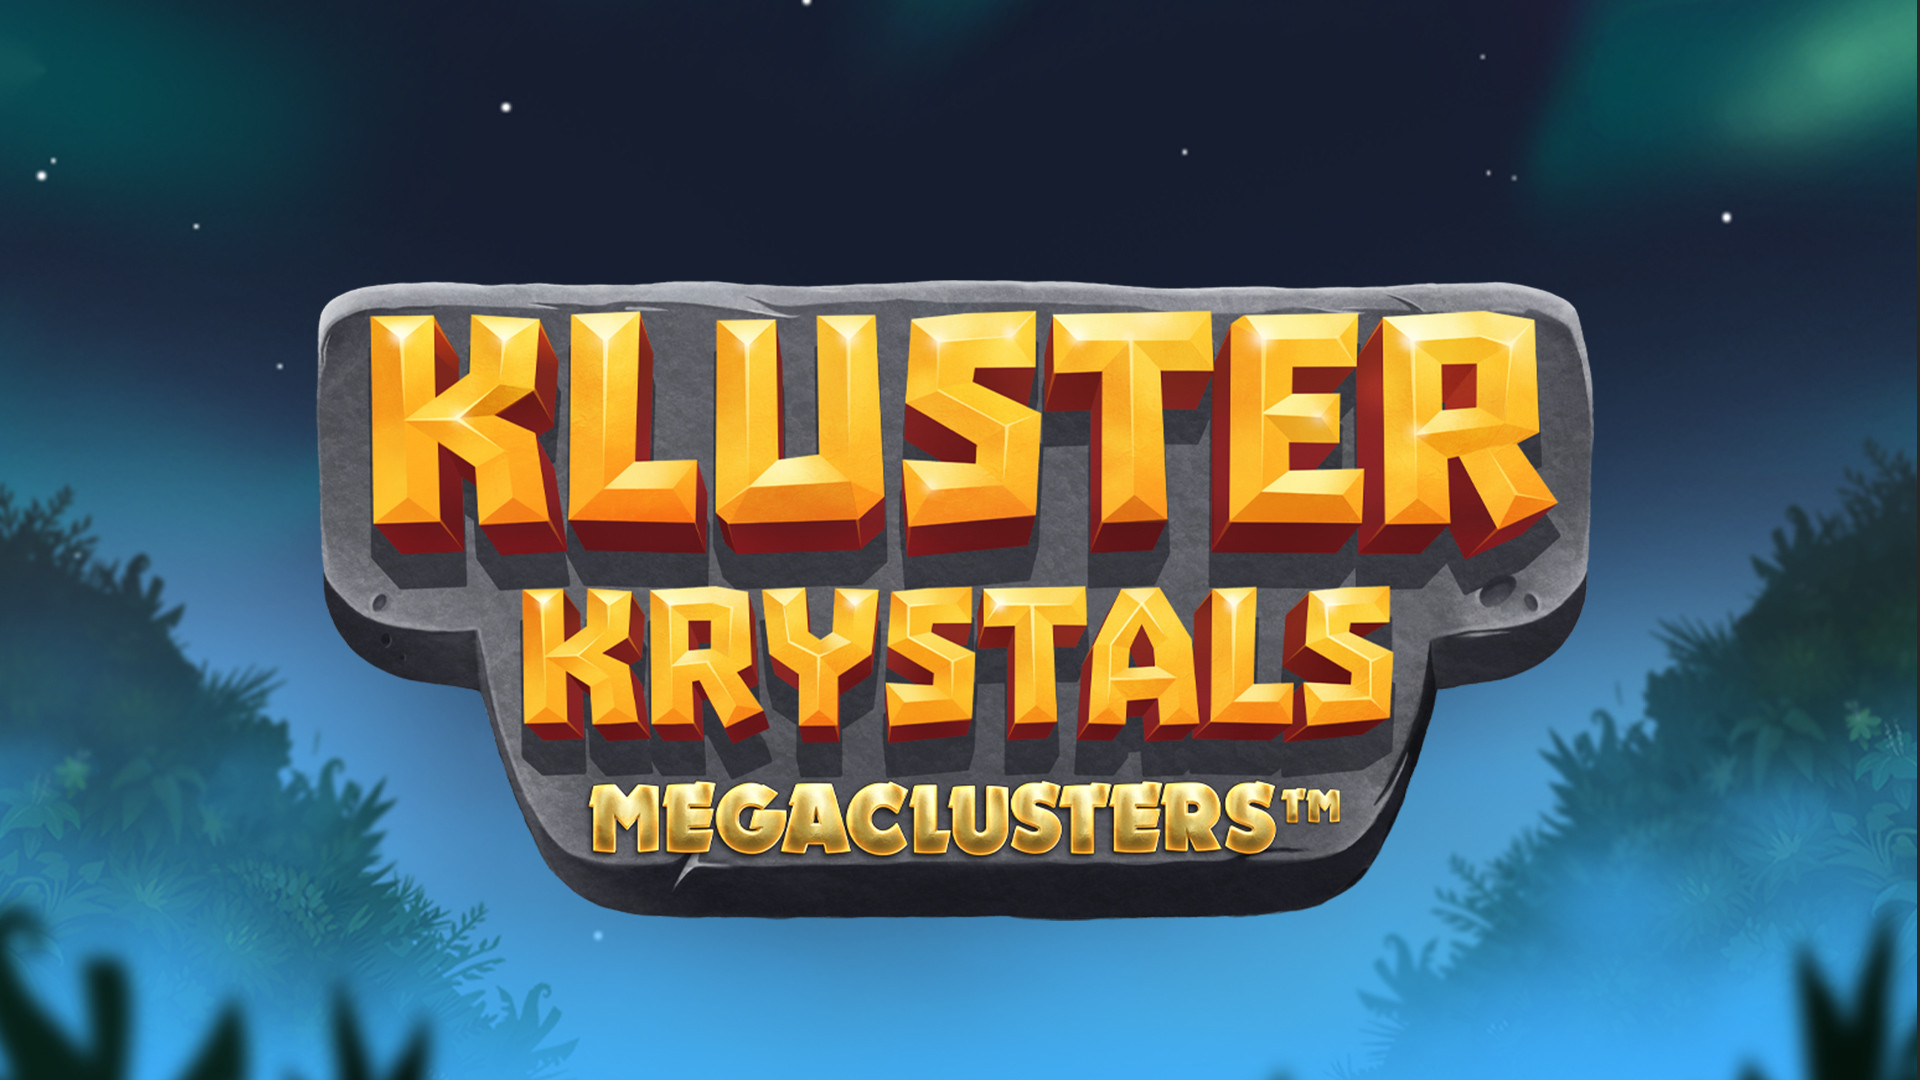 Kluster Krystals MEGACLUSTERS